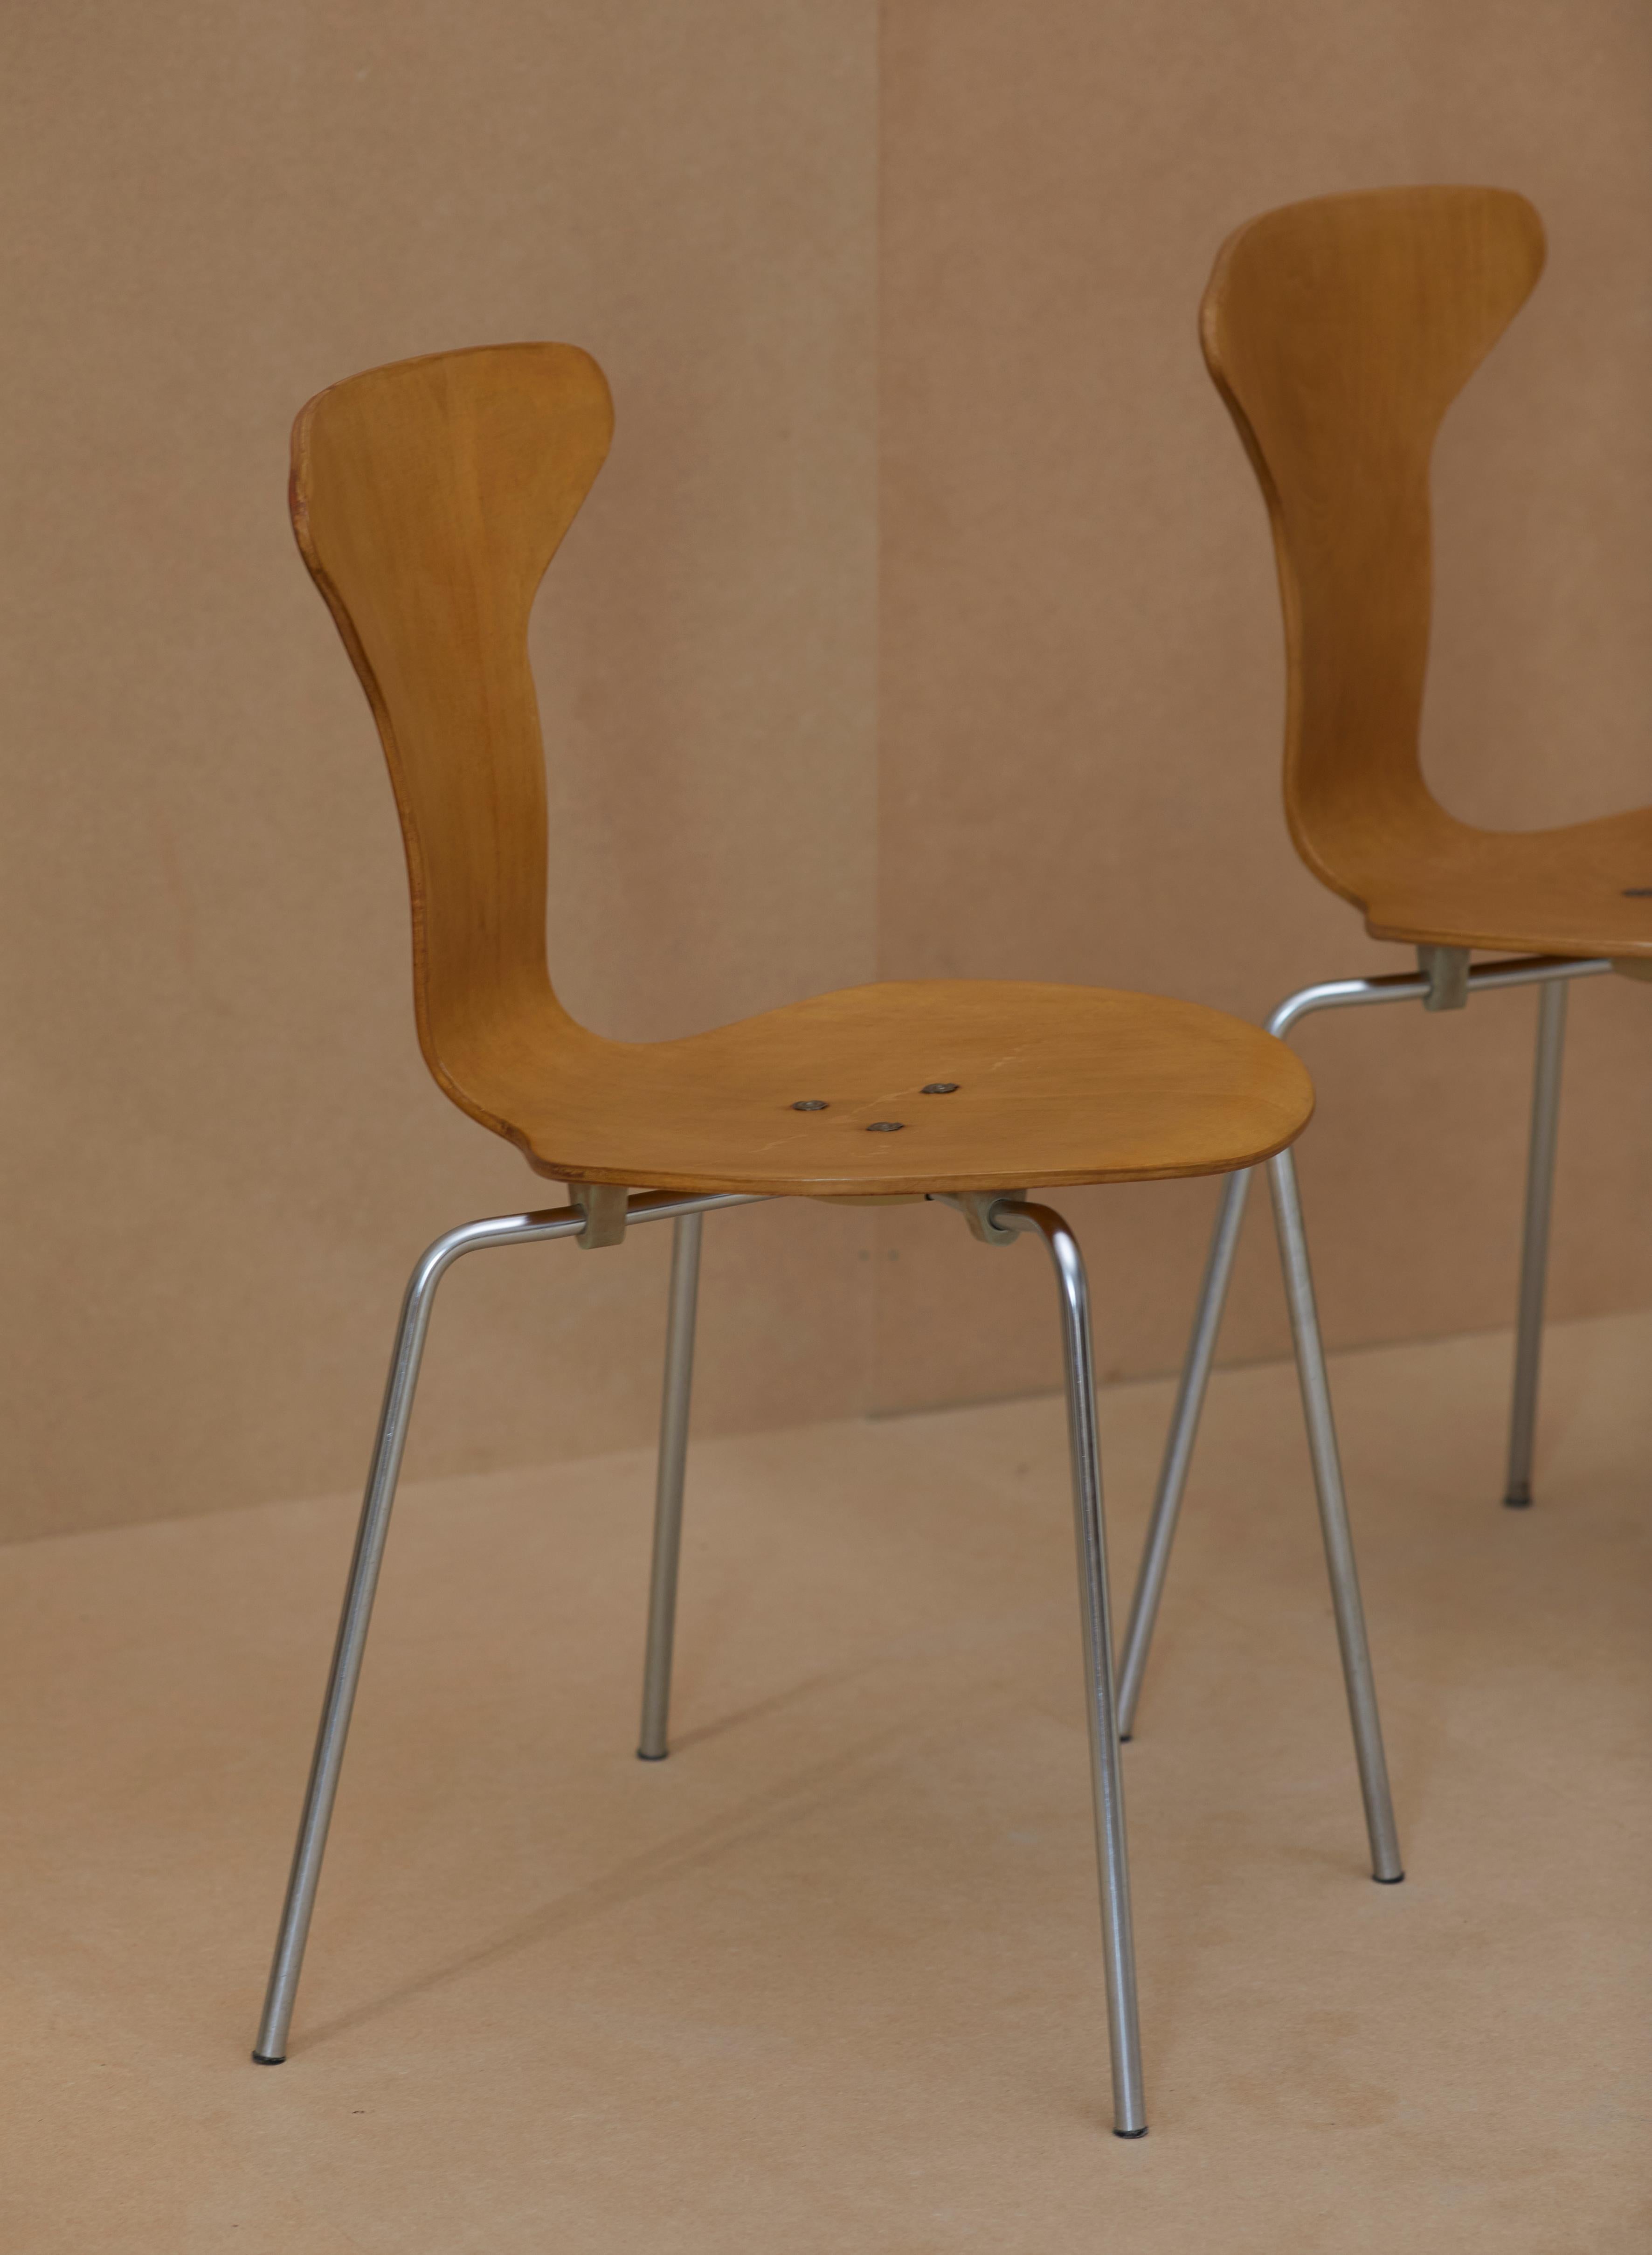 2 chaises Mosquito 3105 par Arne Jacobsen pour Fritz Hansen.
Fabriquées au Danemark en 1969 (cf photos).
Ces chaises étaient à l'origine recouvertes de simili cuir rembourré en mousse.
Trop abimé, le simili cuir a été retiré, les chaises nettoyées,